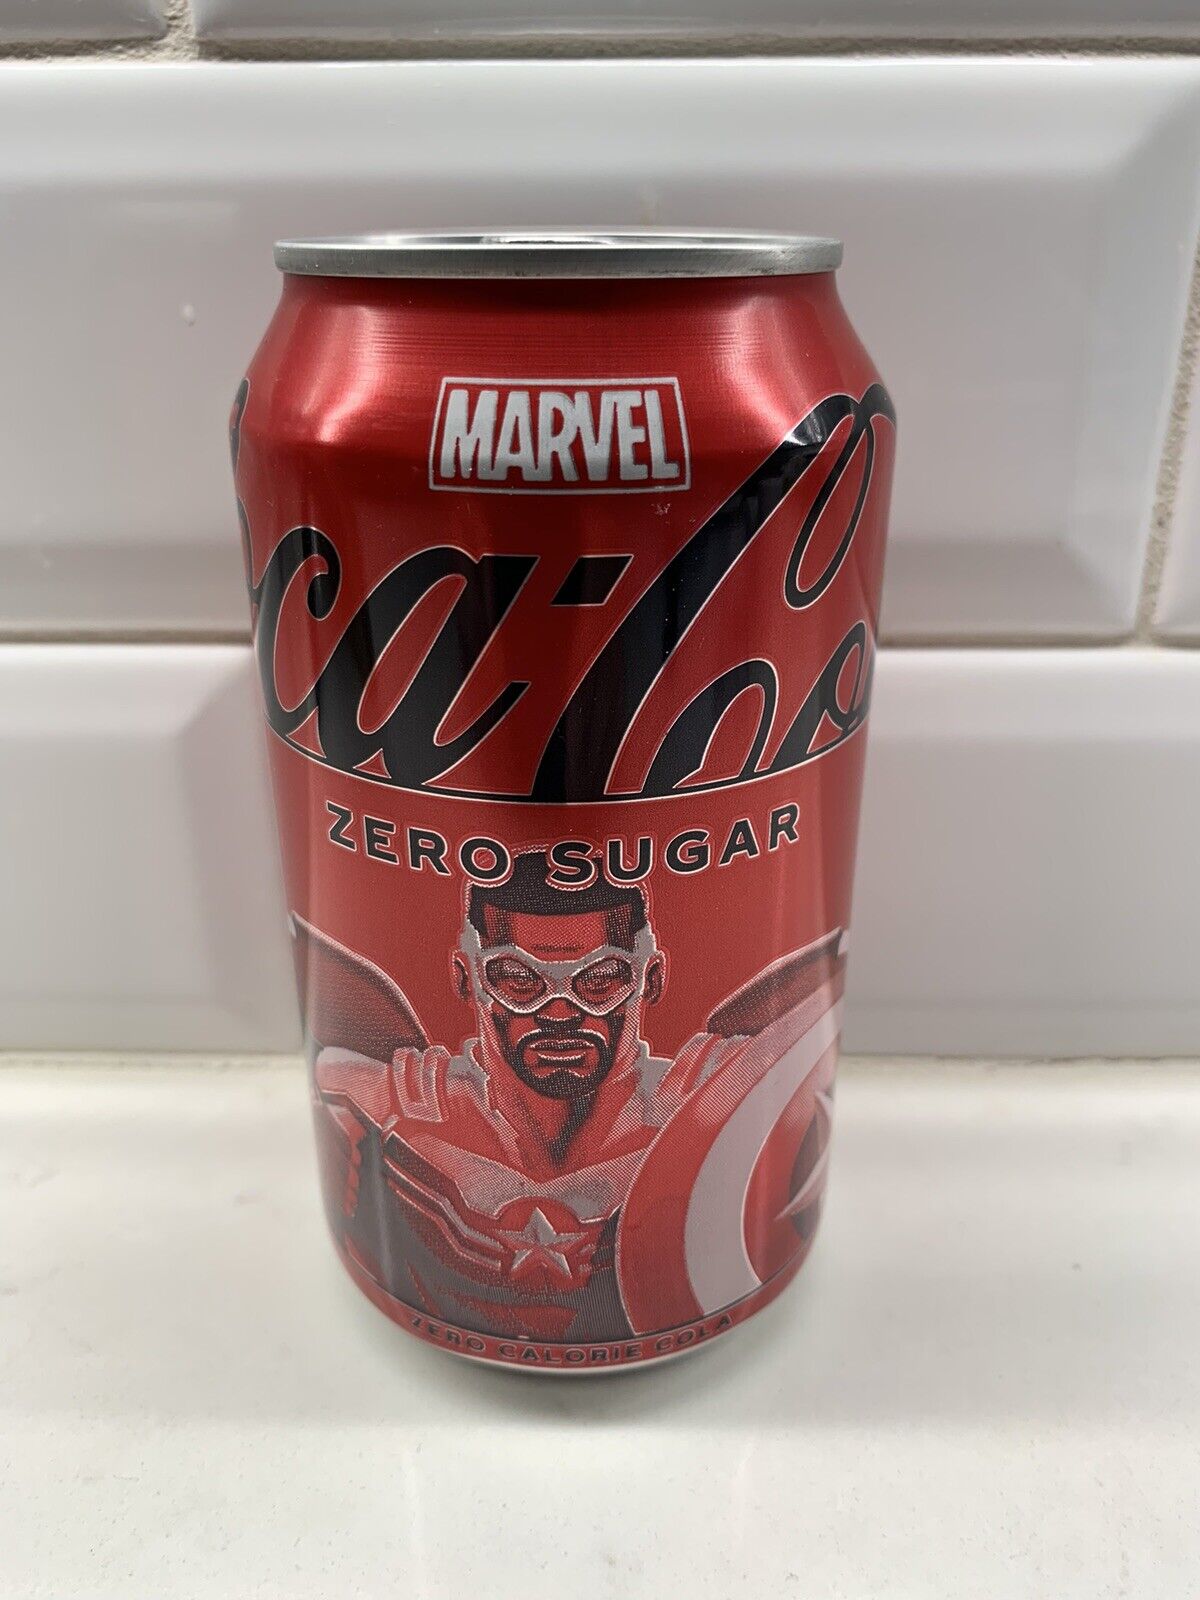 NEW LIMITED EDITION MARVEL Captain America COKE COKA COLA ZERO SUGAR 12 FLOZ CAN